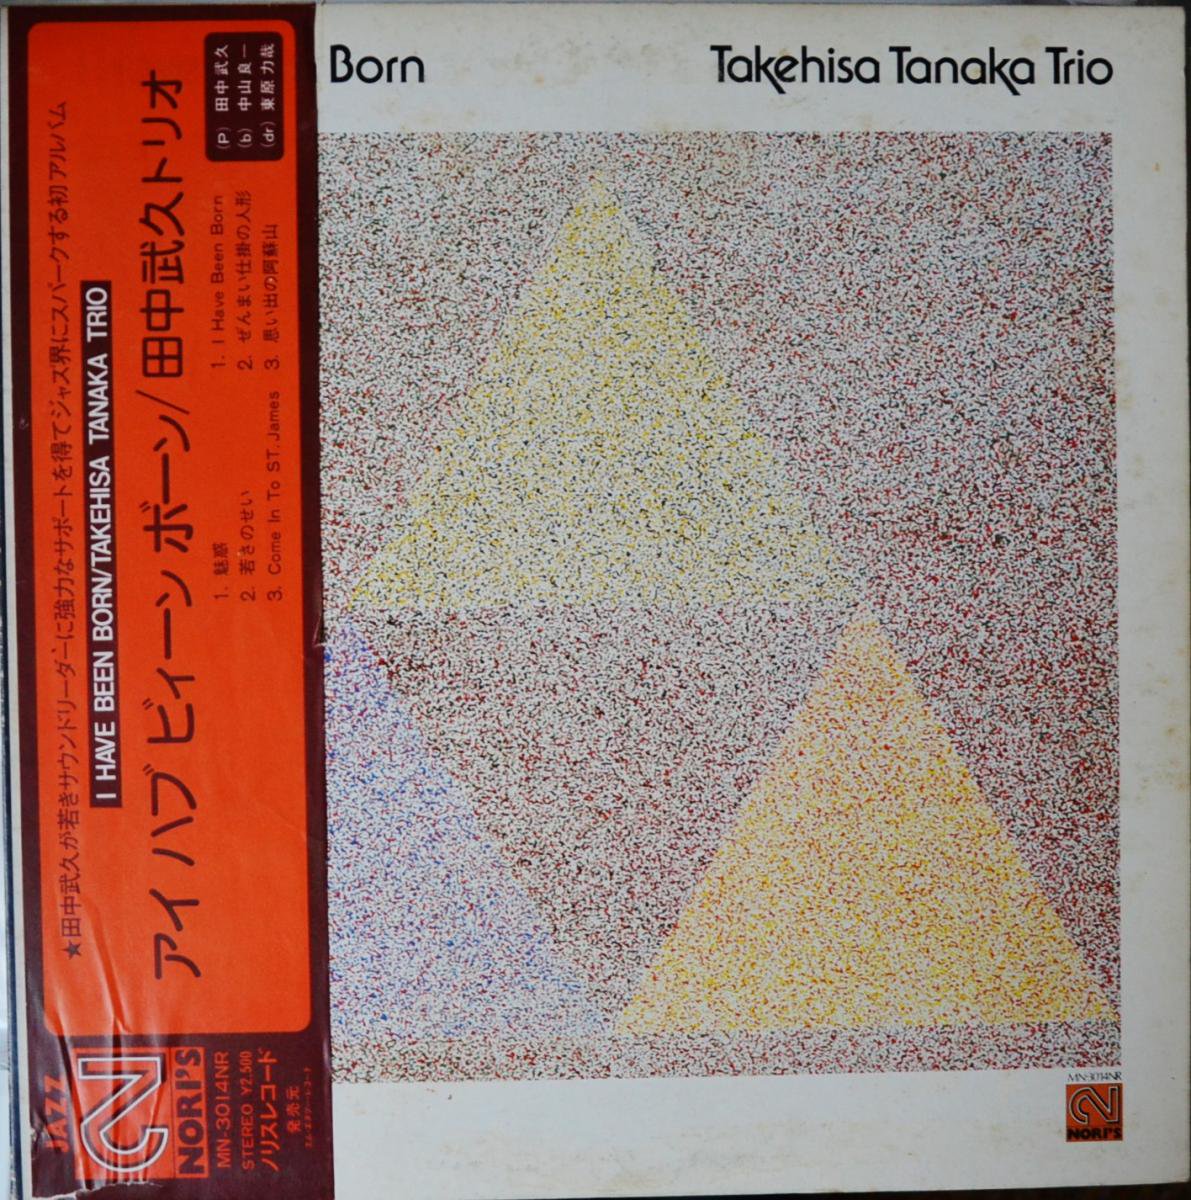 田中武久トリオ TAKEHISA TANAKA TRIO / アイ ハブ ビィーン ボーン I HAVE BEEN BORN (LP)